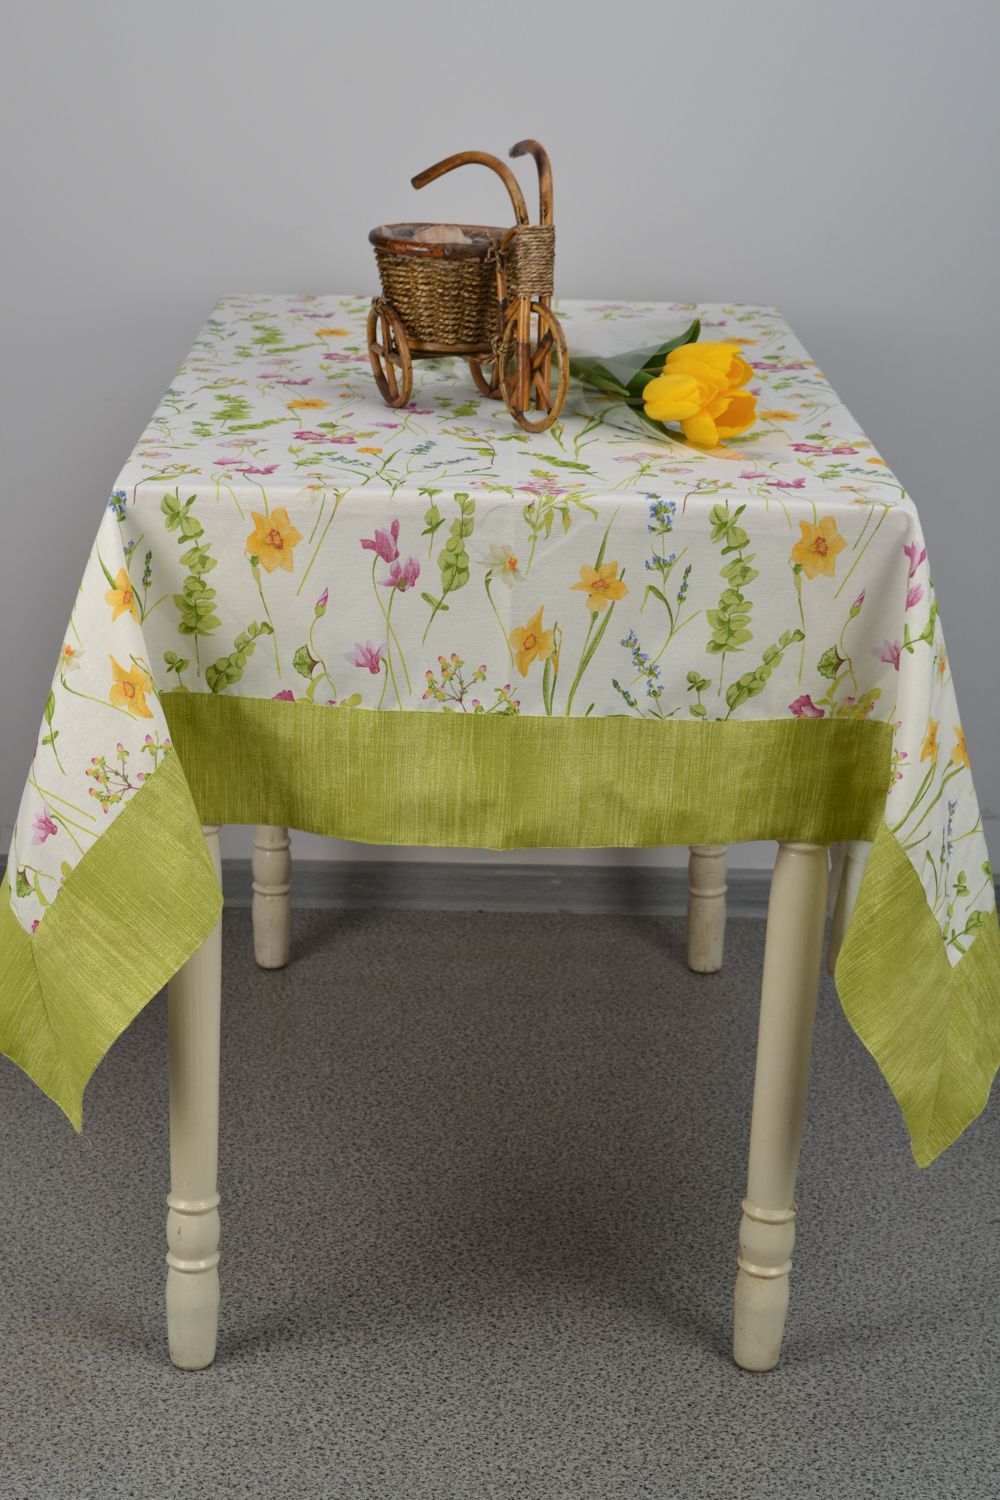 Текстильная скатерть яркая на стол фото 2